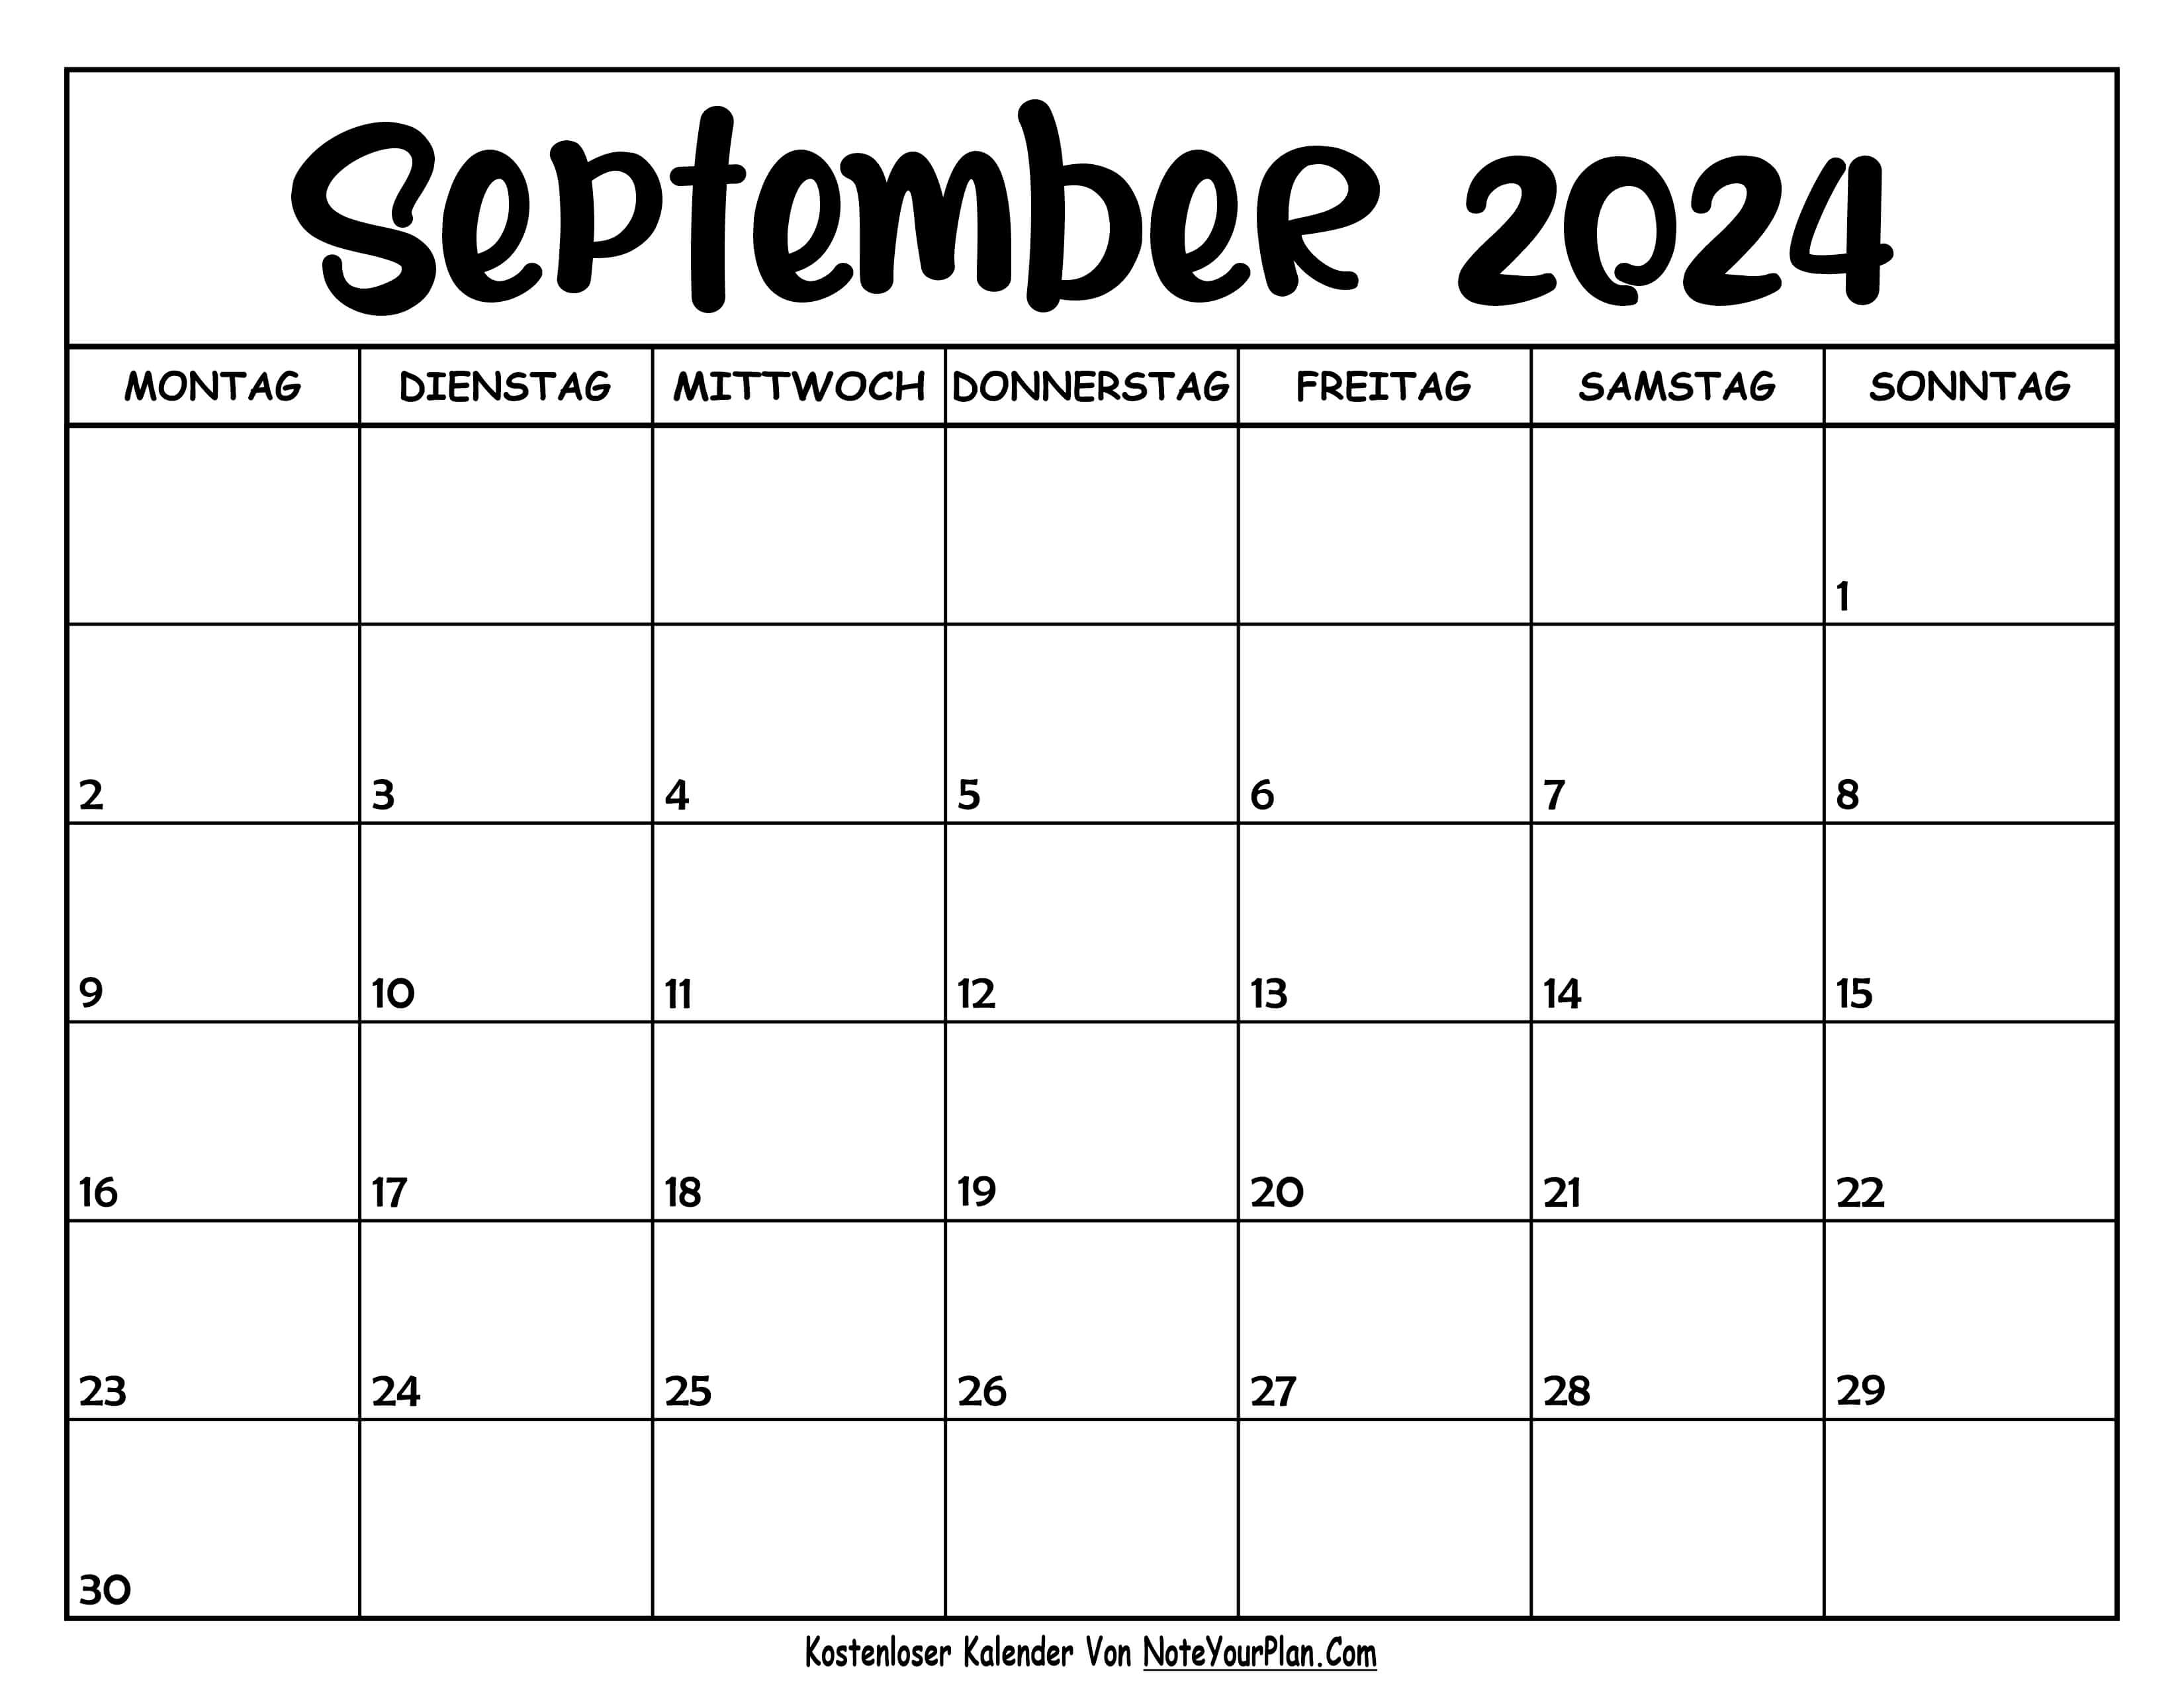 Kalender September 2024